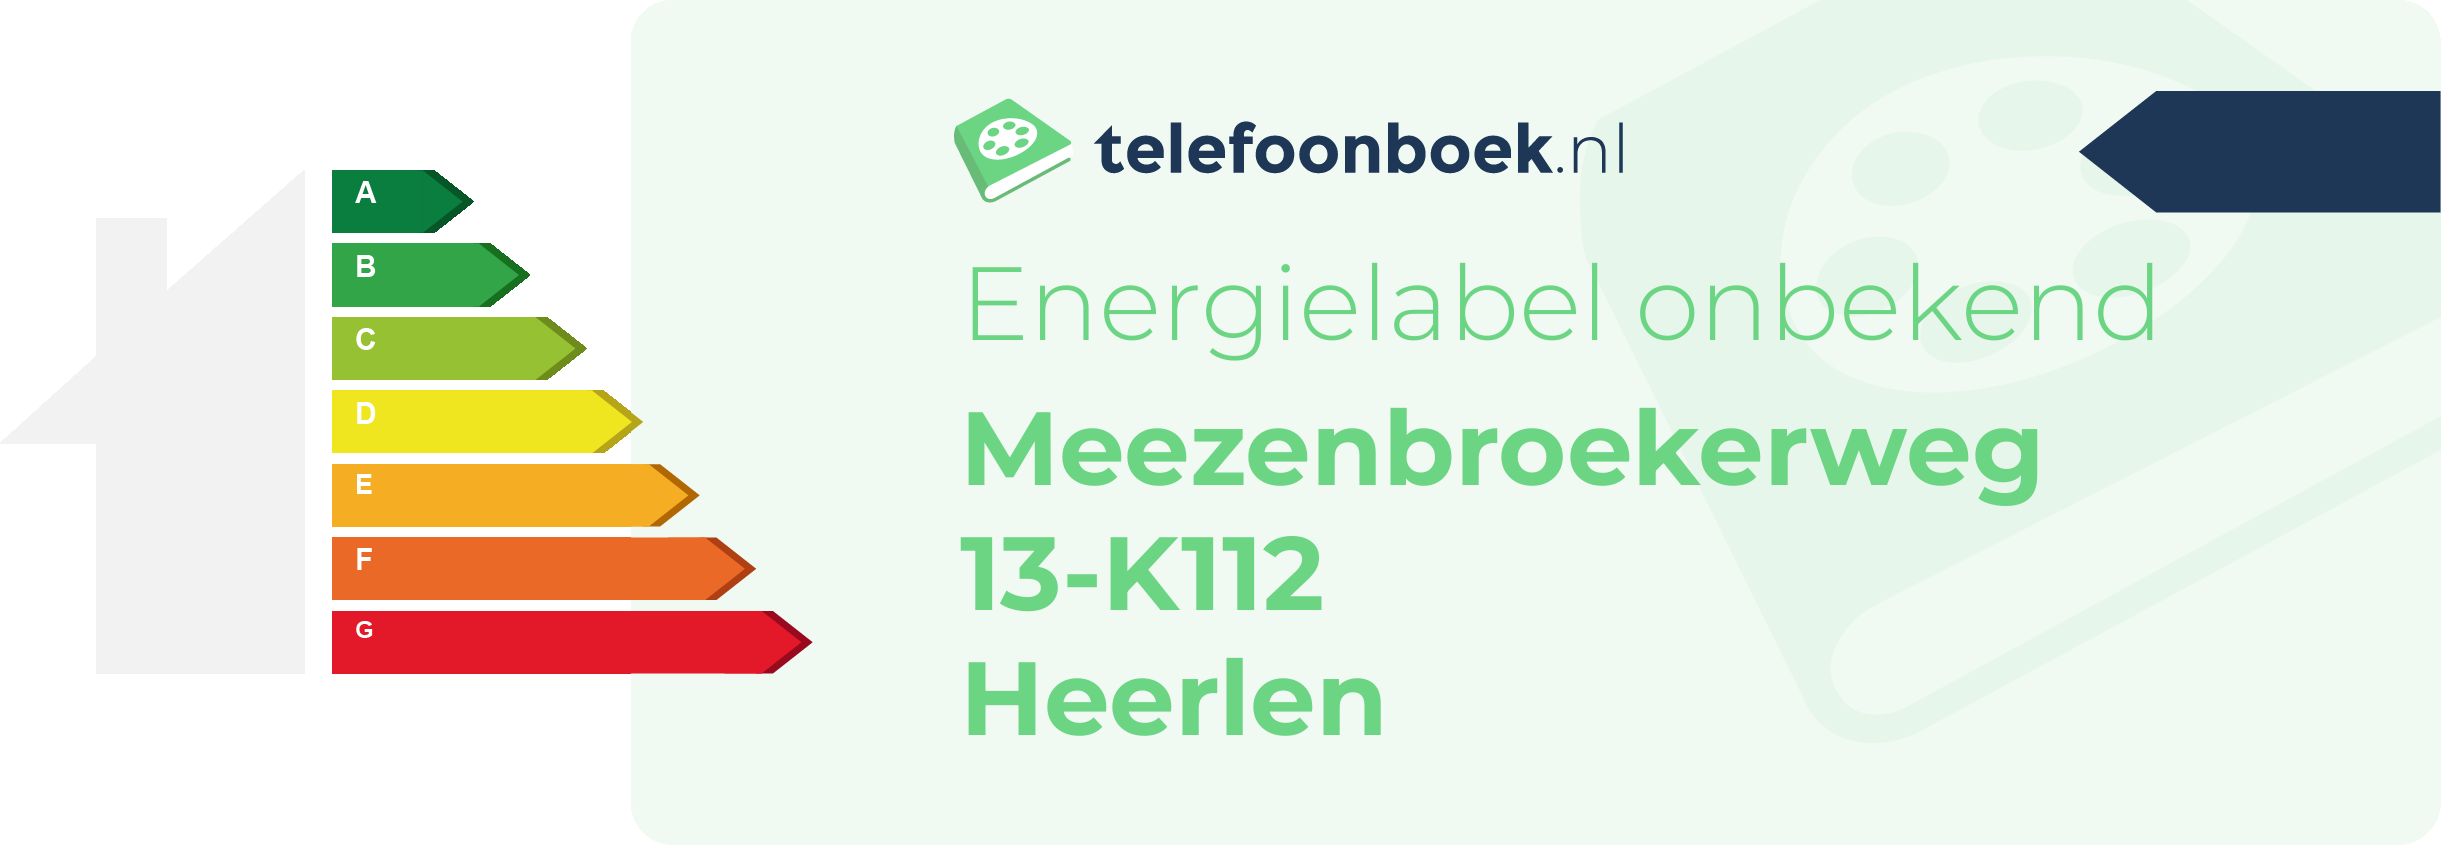 Energielabel Meezenbroekerweg 13-K112 Heerlen